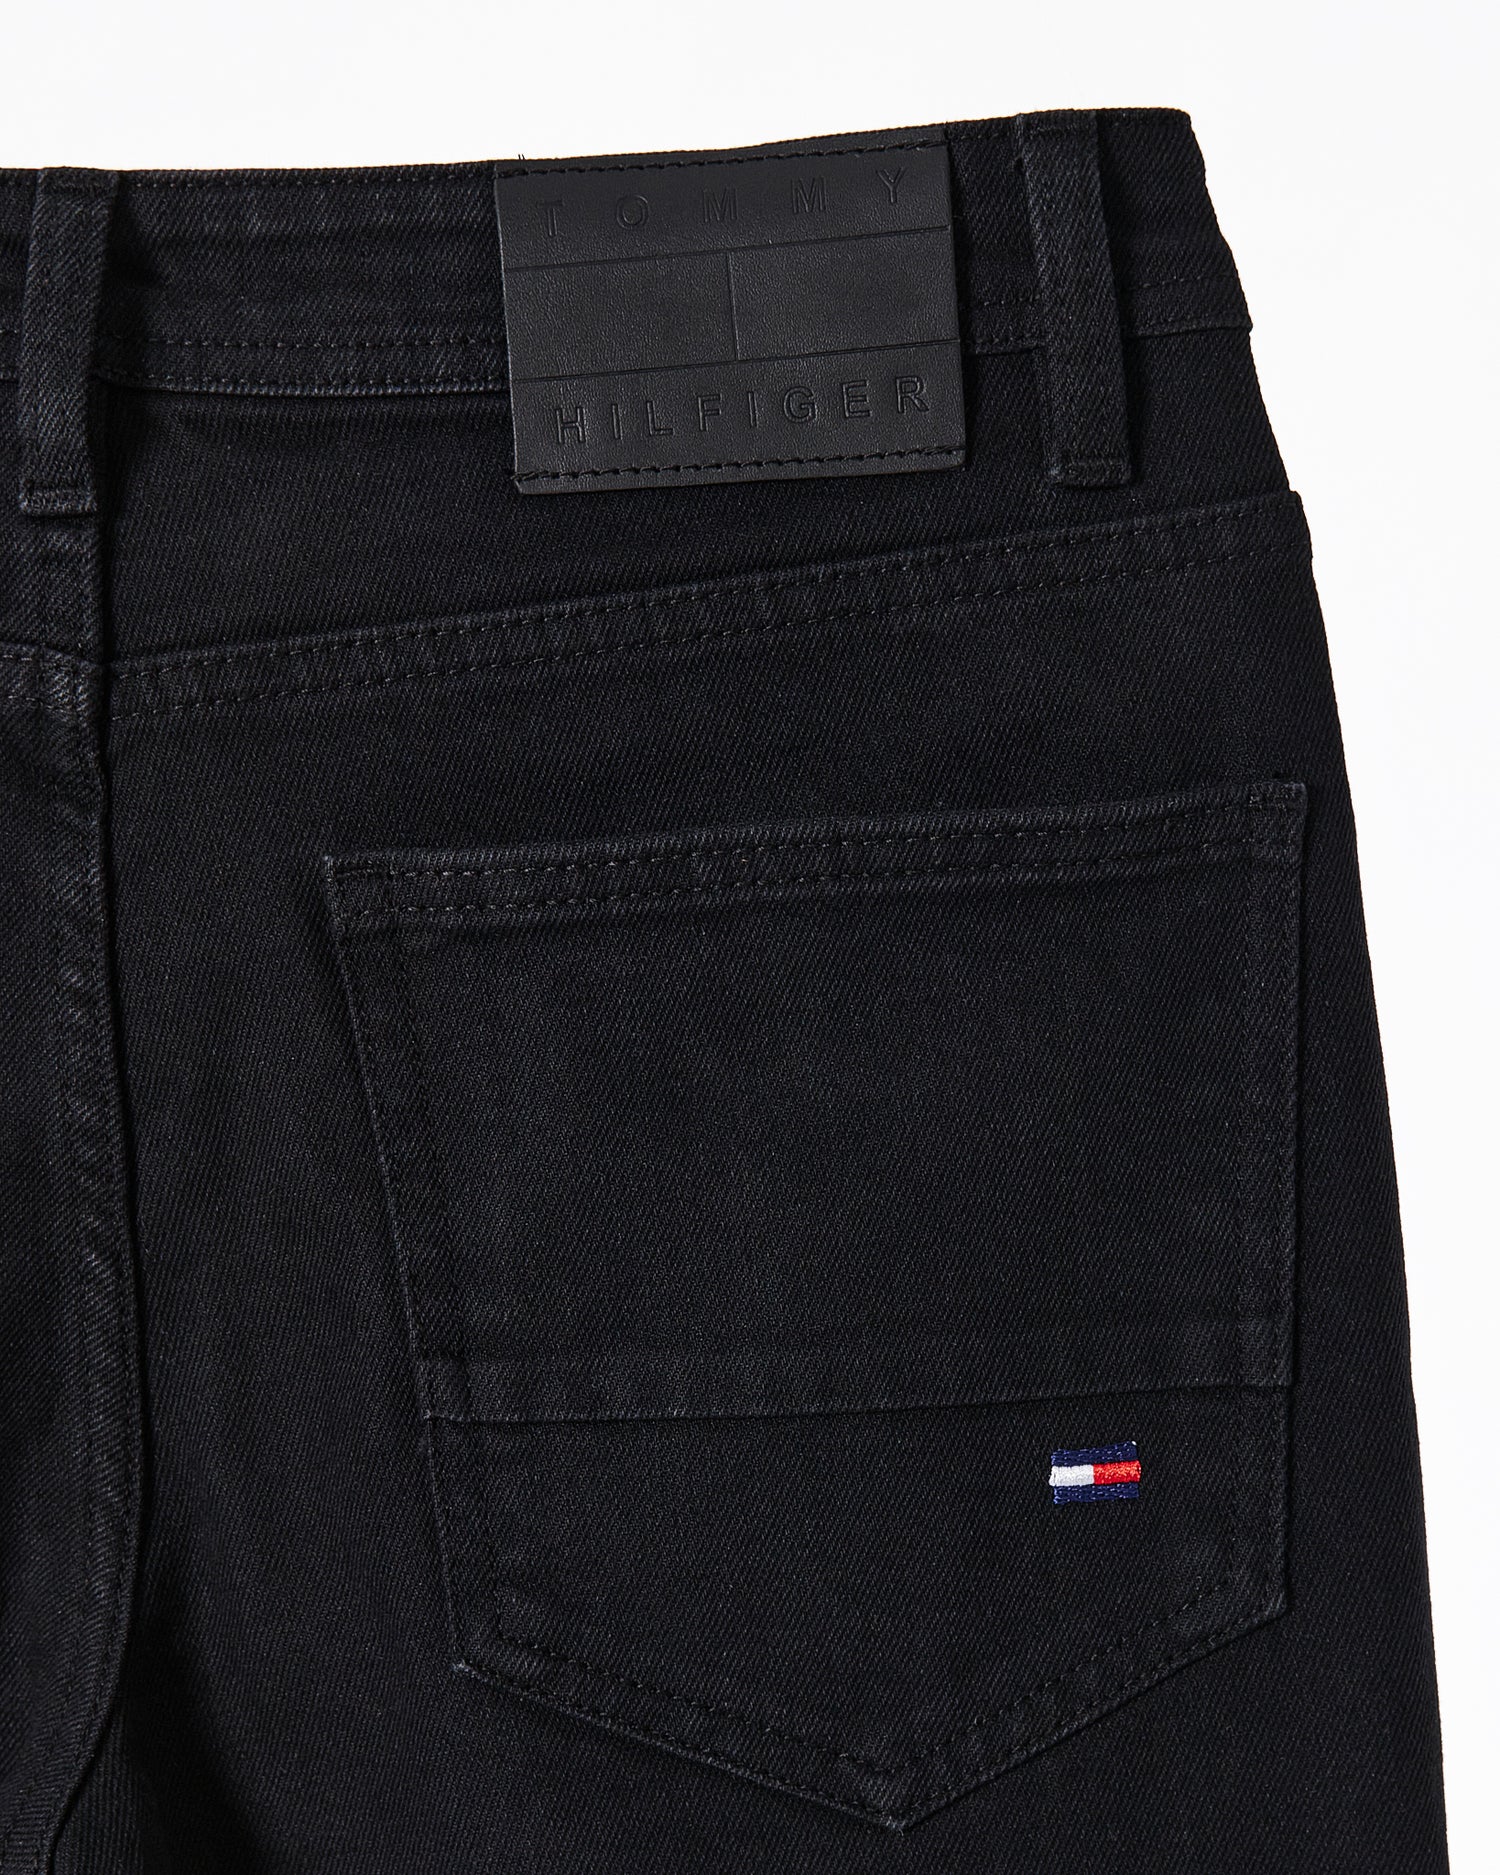 TH Flag Embroidered Men Black Slim Fit Jeans 25.90